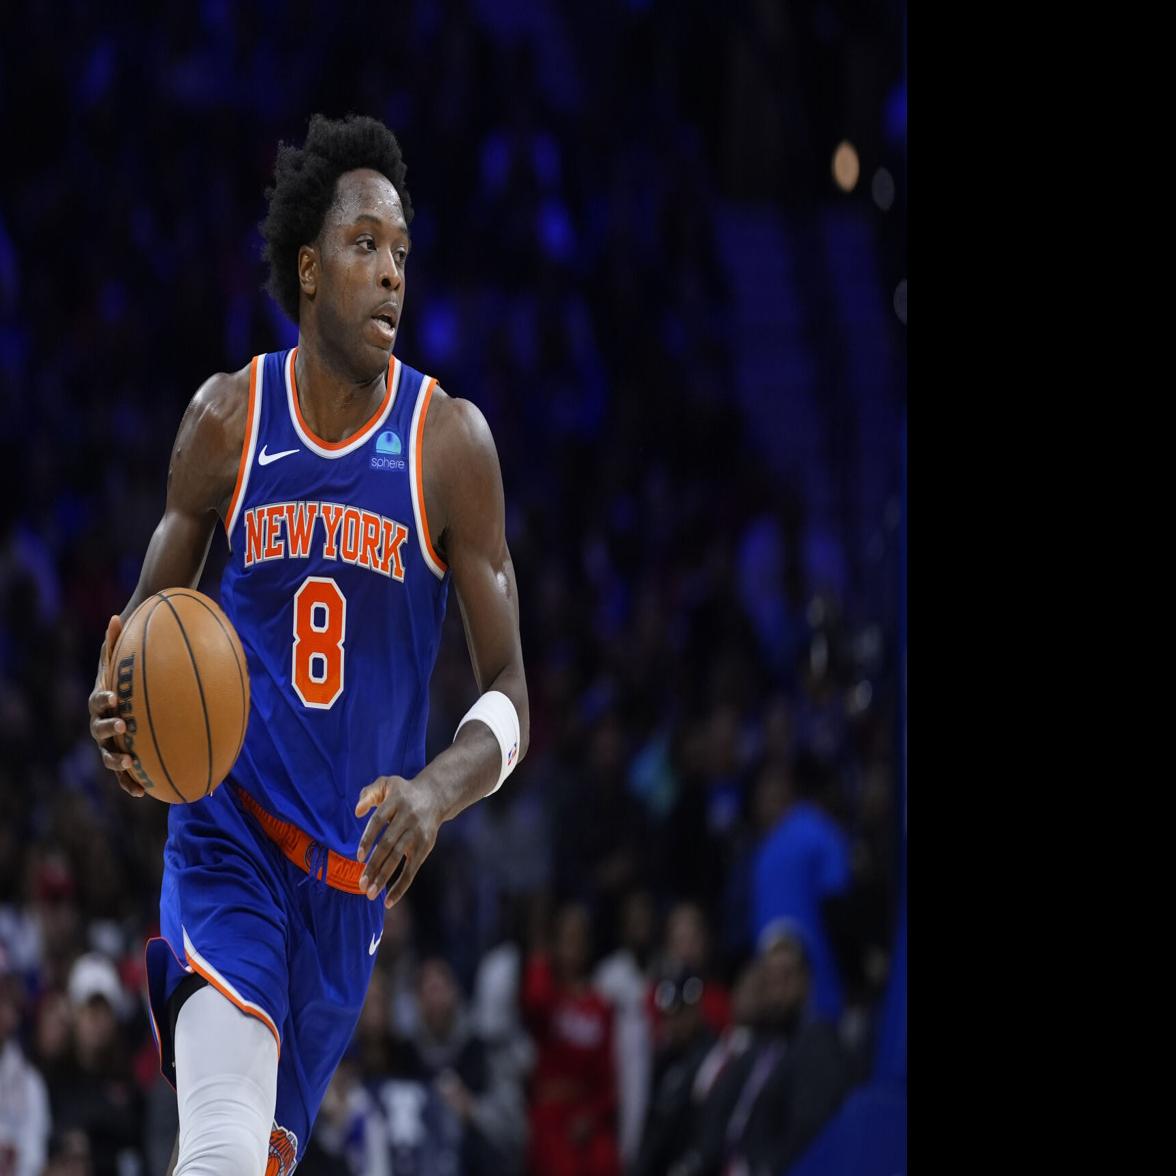 New York Knicks : Sports Fan Shop Women's Clothing : Target